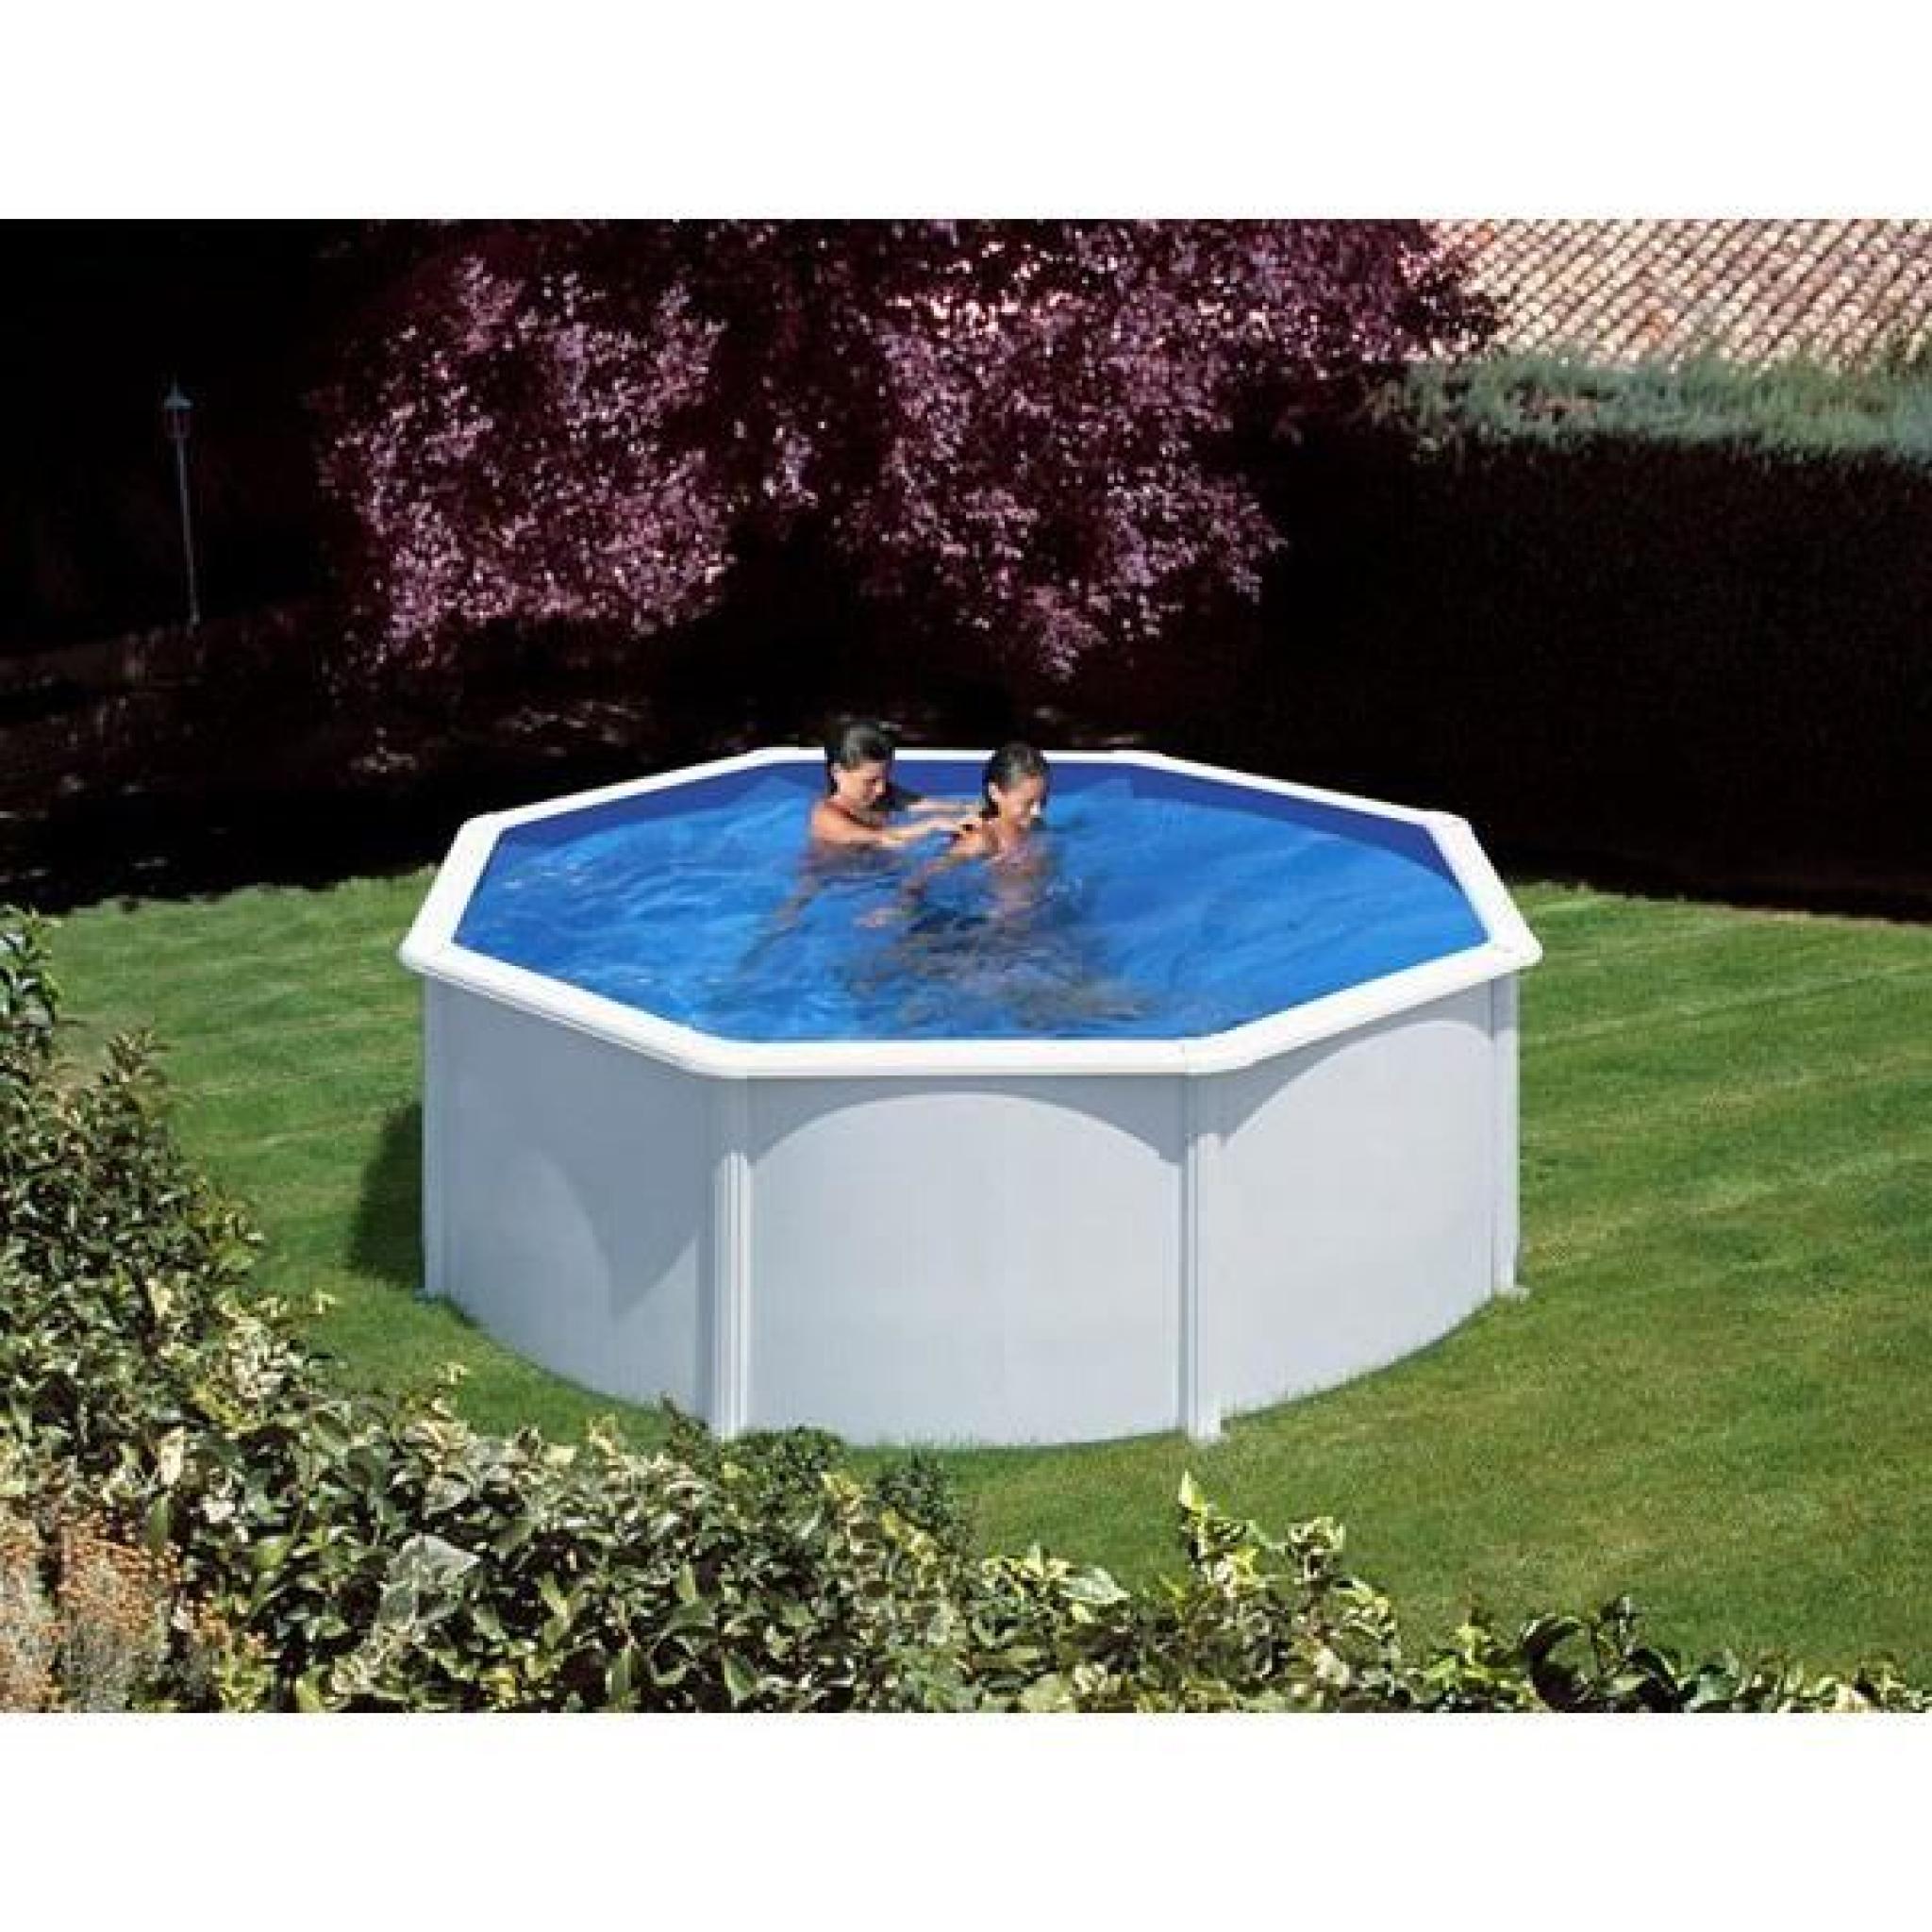 Kit piscine hors sol AZORES ronde en acier - couleur blanche - Ø 3,50 x 1,32 m pas cher